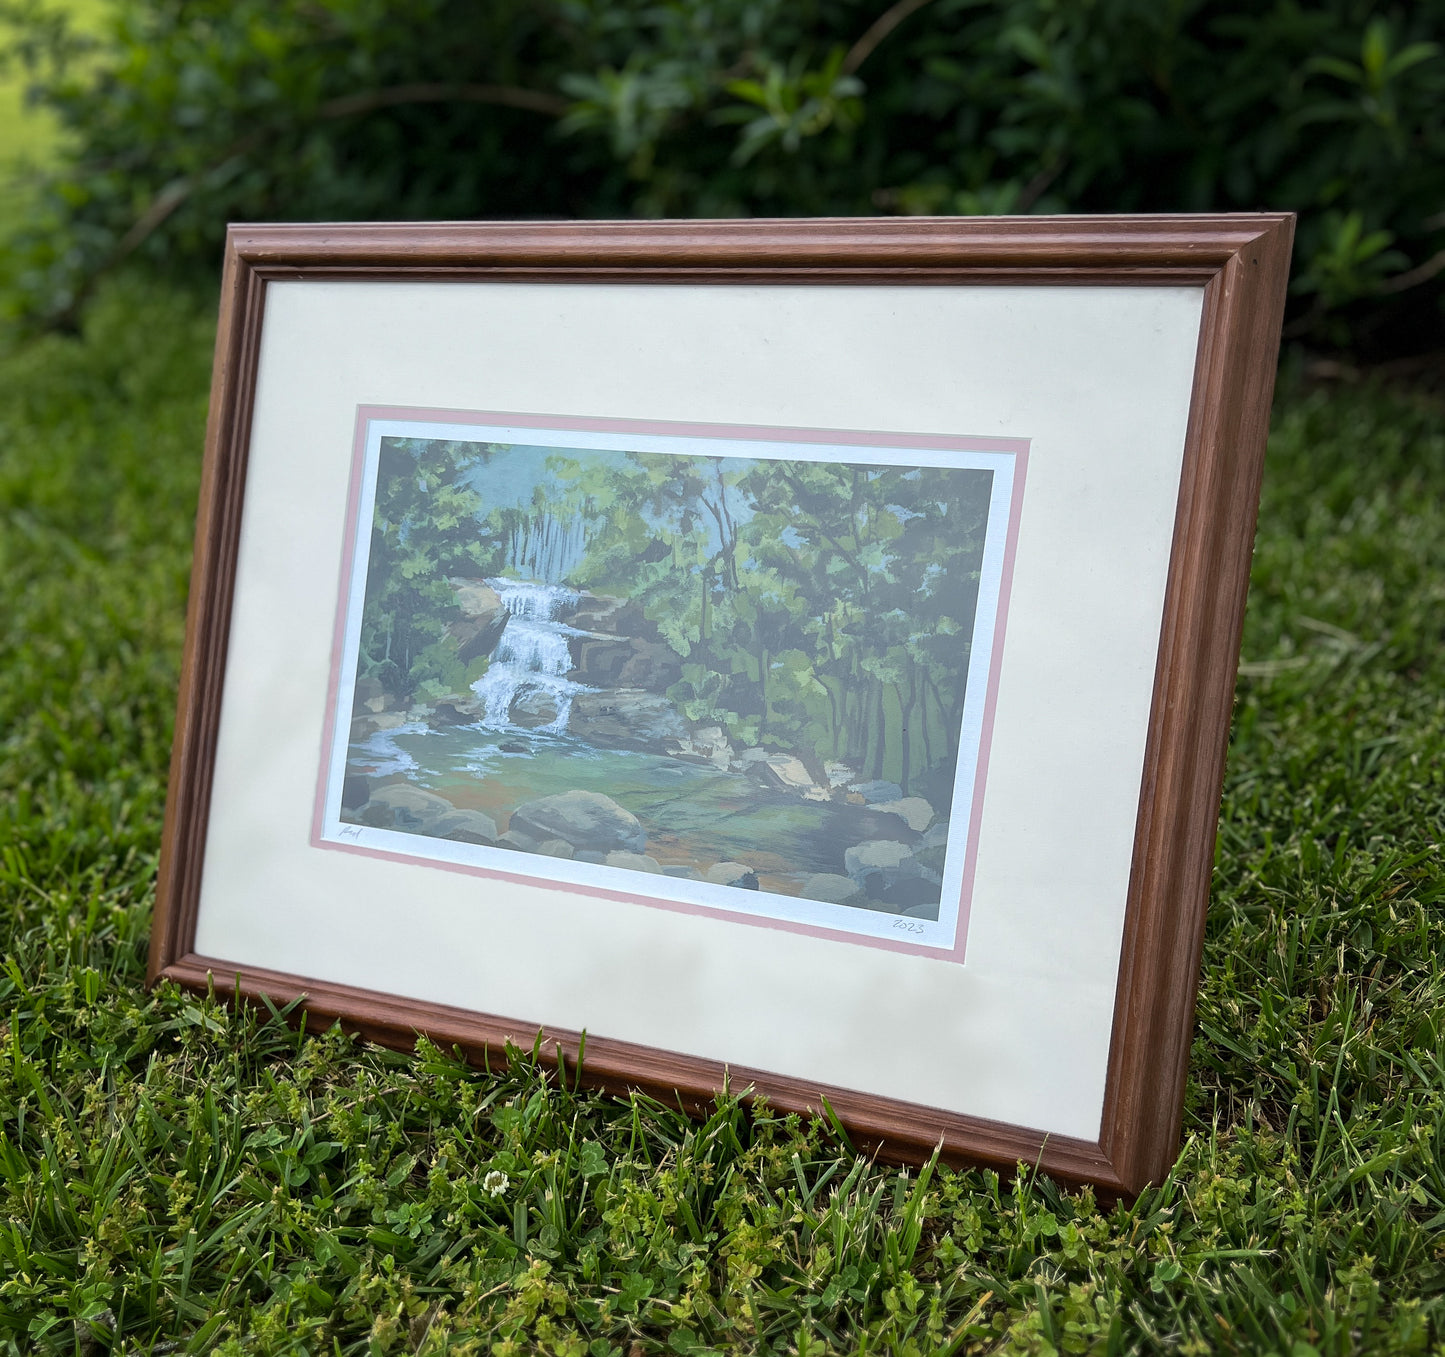 "Little Bradley" Framed Print in a Wood Vintage Frame